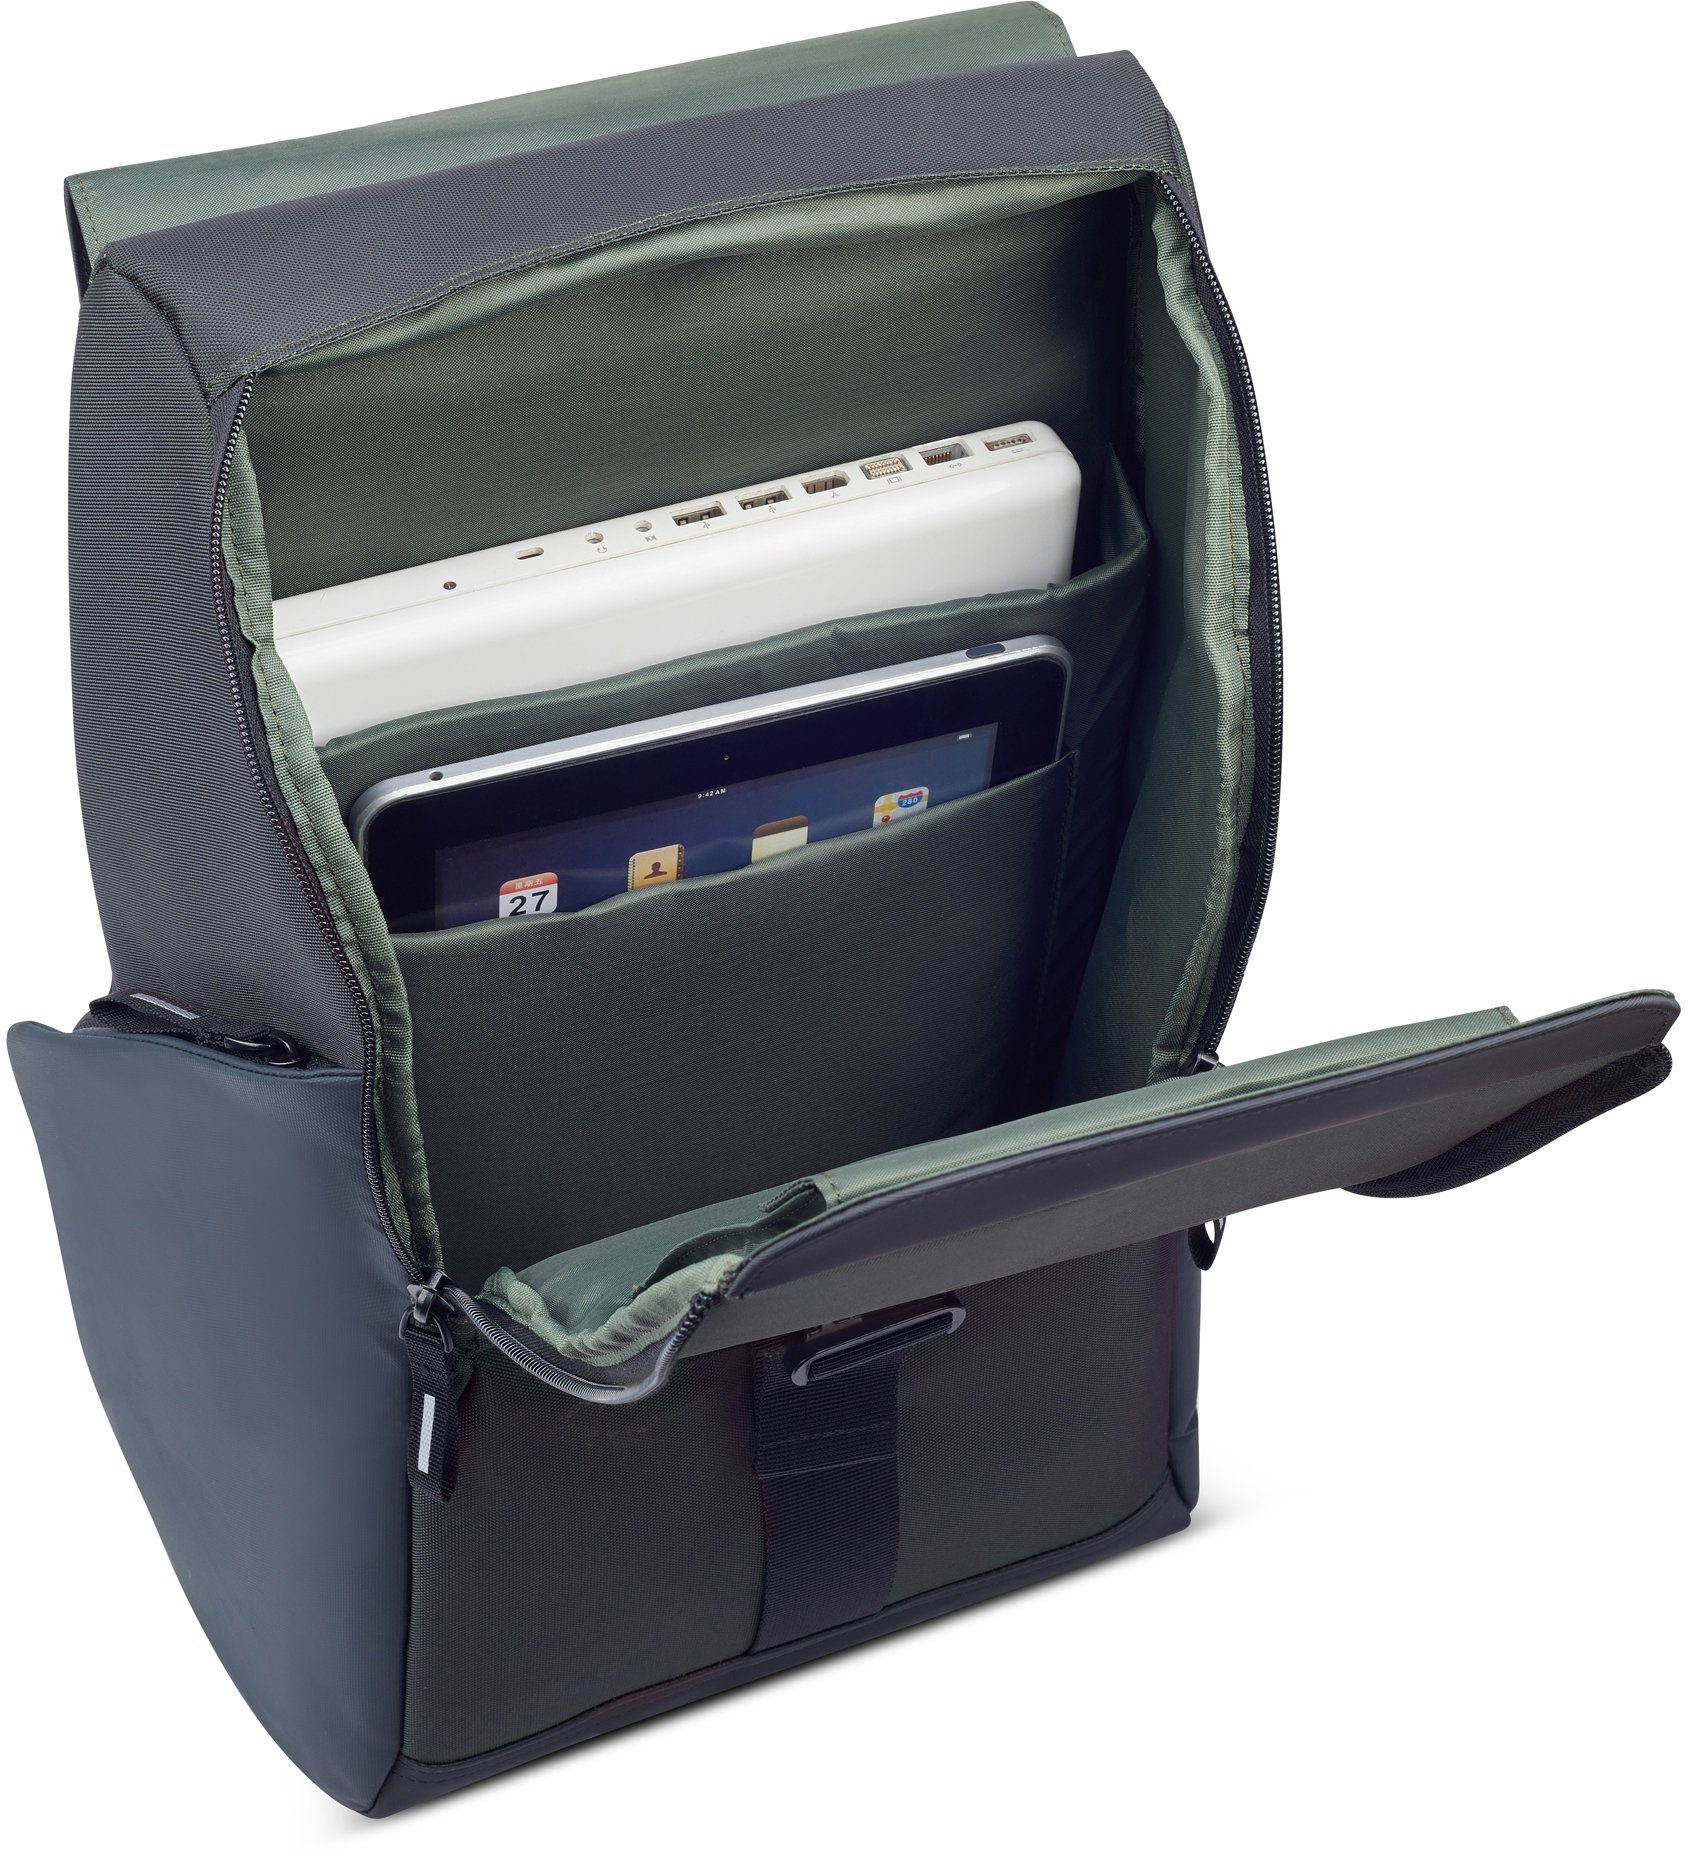 Delsey Laptoprucksack und Securflap, 15-6-Zoll Laptopfach black Anti-RFID-Fach mit gepolstetem